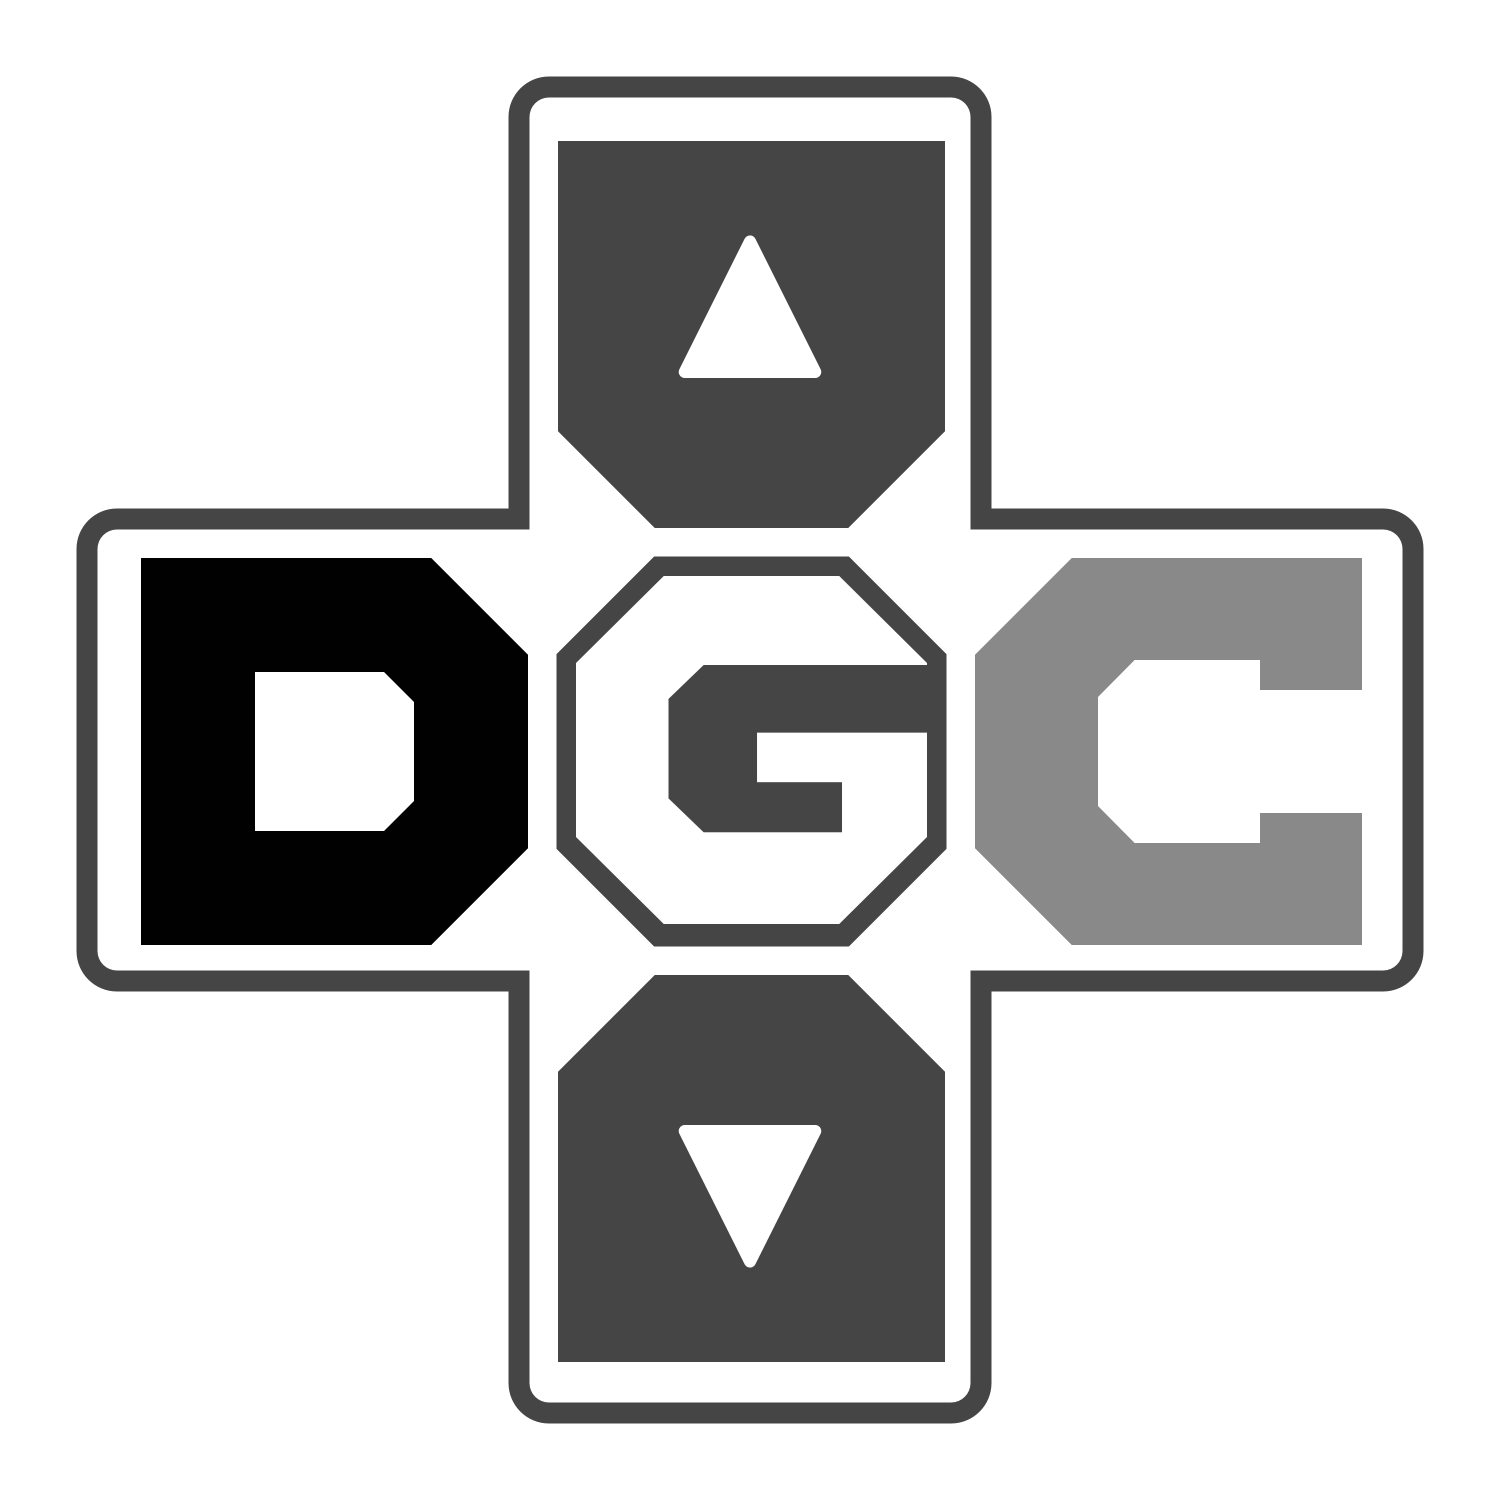 Dev Game Club